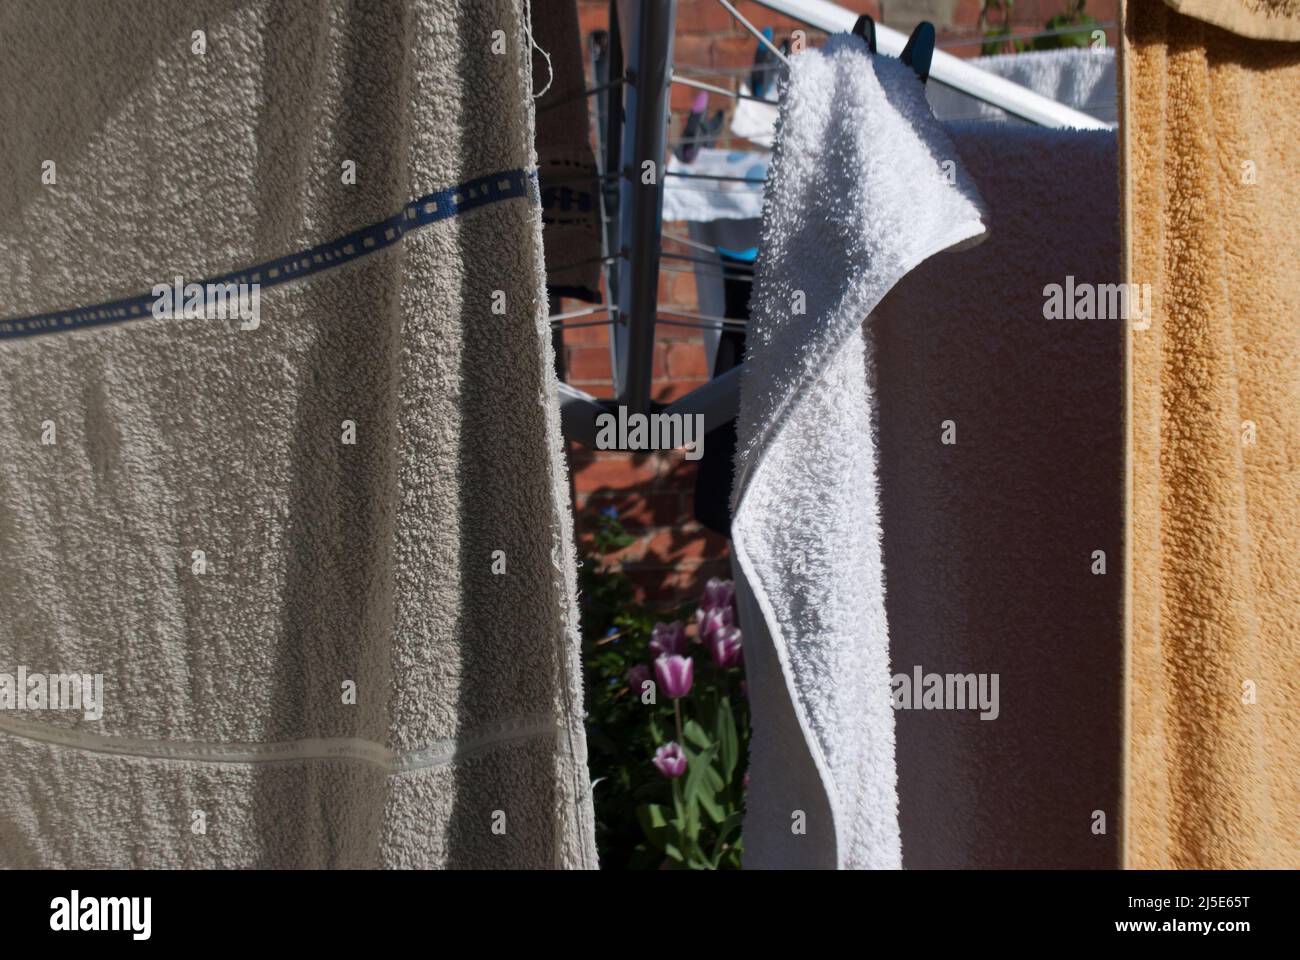 Primer plano de toallas / lavado colgando en una línea de paños montados en la pared en el jardín en Ruskington, Sleaford, Inglaterra, Reino Unido Foto de stock